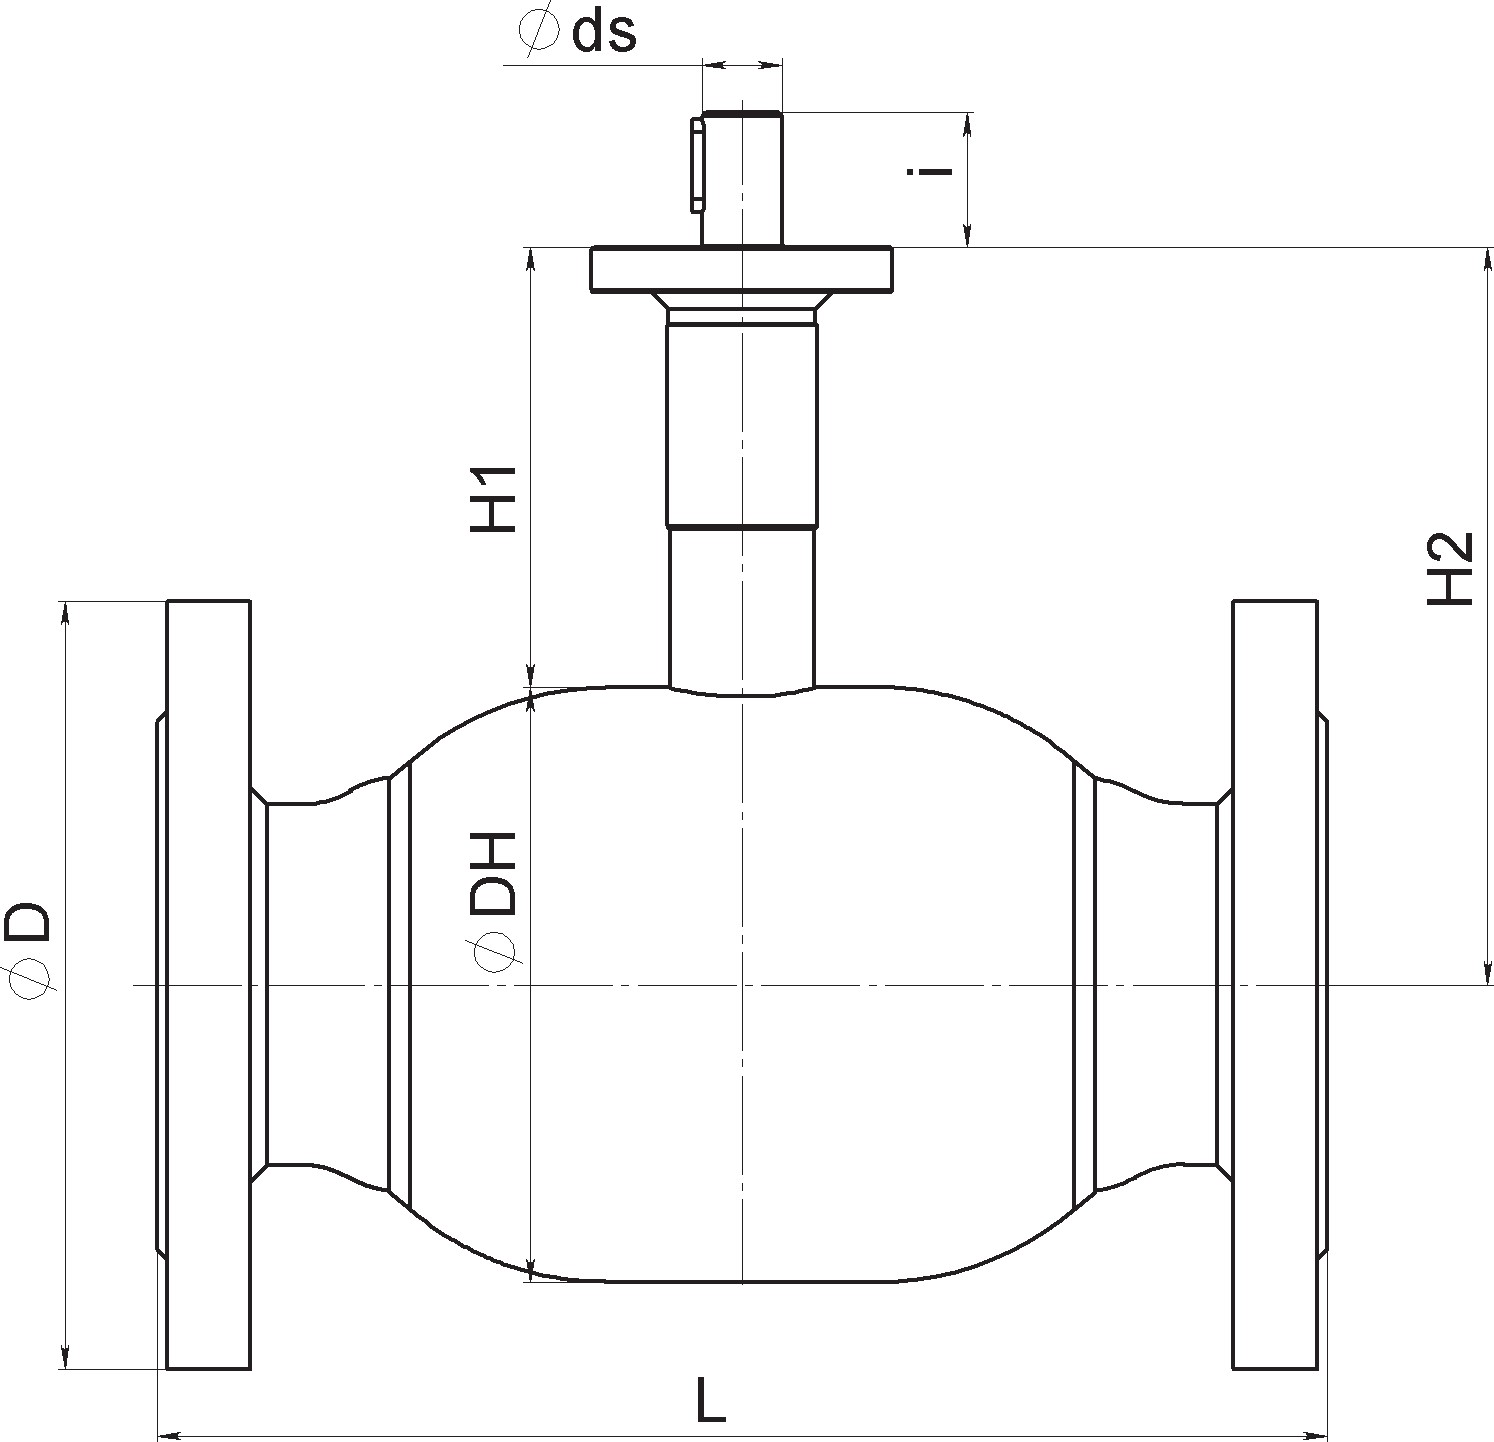 Кран шаровый Broen Ballomax-КШТ61.113.Б.16-25 Ду200 Ру16 полнопроходный с плавающим шаром, с ISO фланцем, корпус - сталь, уплотнение - EPDM, фланцевый, без управления